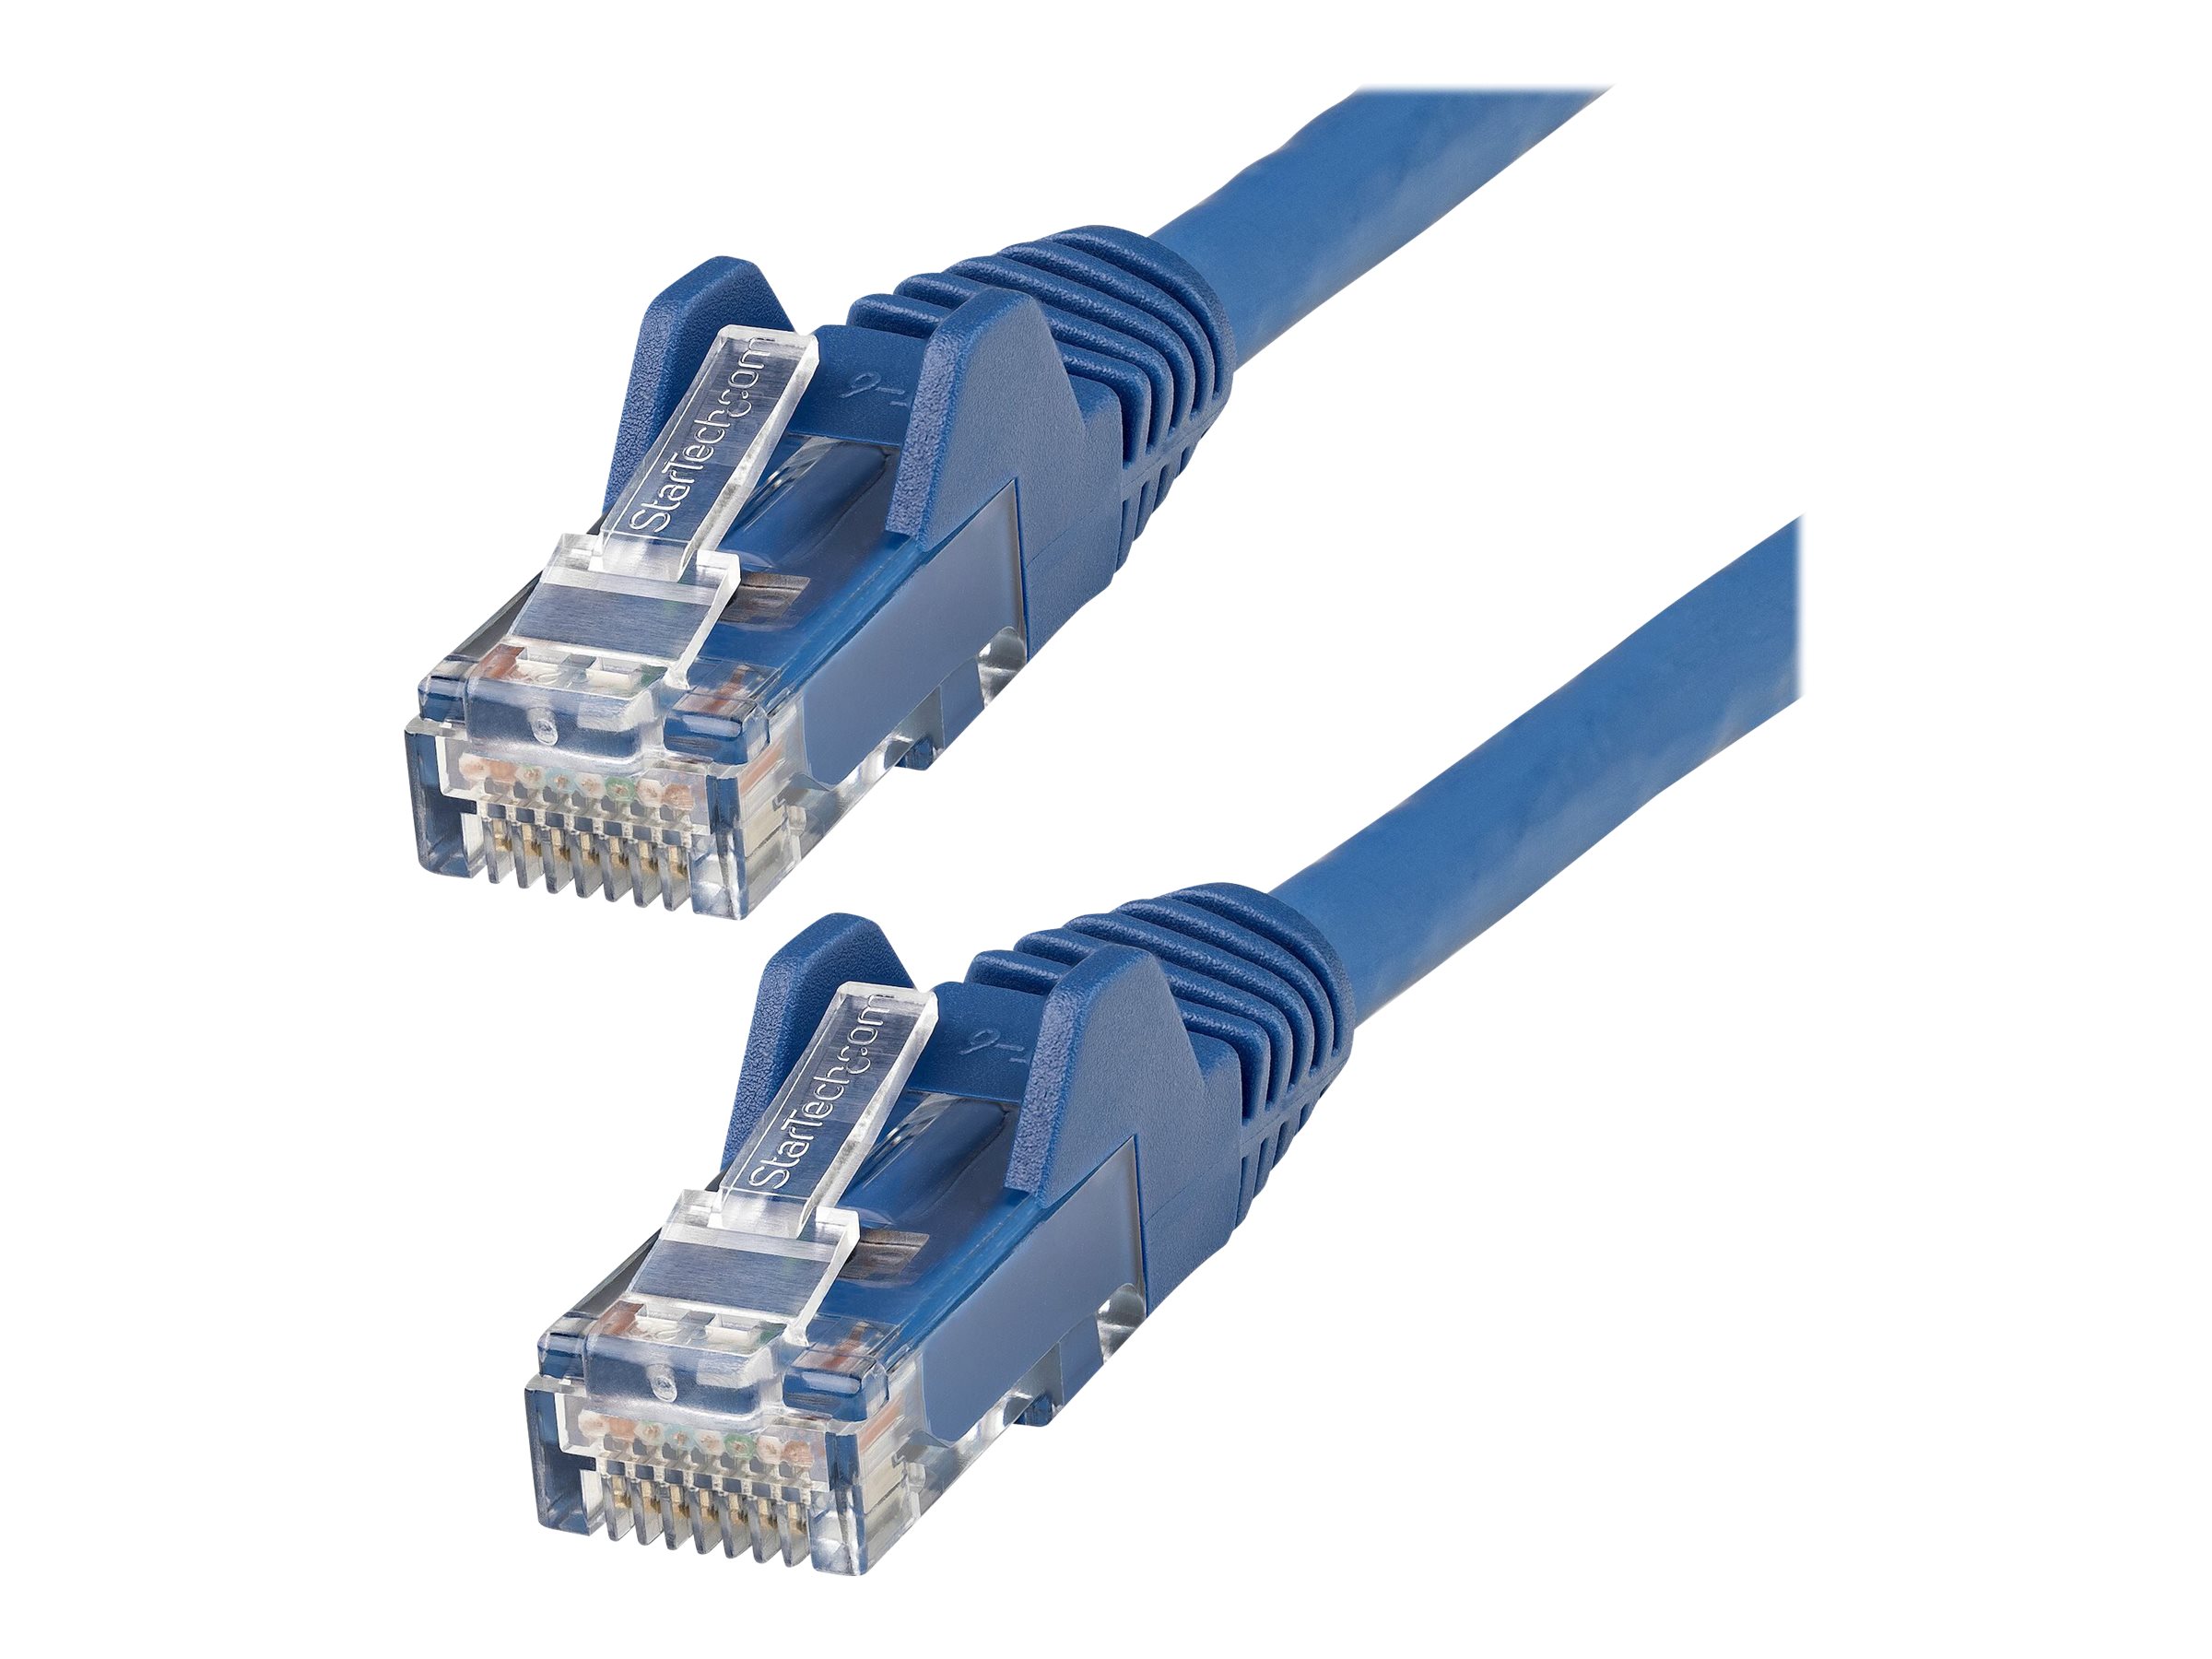 StarTech.com Câble Ethernet CAT6 2m - LSZH (Low Smoke Zero Halogen) - Cordon RJ45 UTP Anti-accrochage 10 GbE LAN - Câble Réseau Internet 650MHz 100W PoE - Bleu - Snagless - 24AWG (N6LPATCH2MBL) - Cordon de raccordement - RJ-45 (M) pour RJ-45 (M) - 2 m - 6 mm - UTP - CAT 6 - sans crochet - bleu - N6LPATCH2MBL - Câbles à paire torsadée